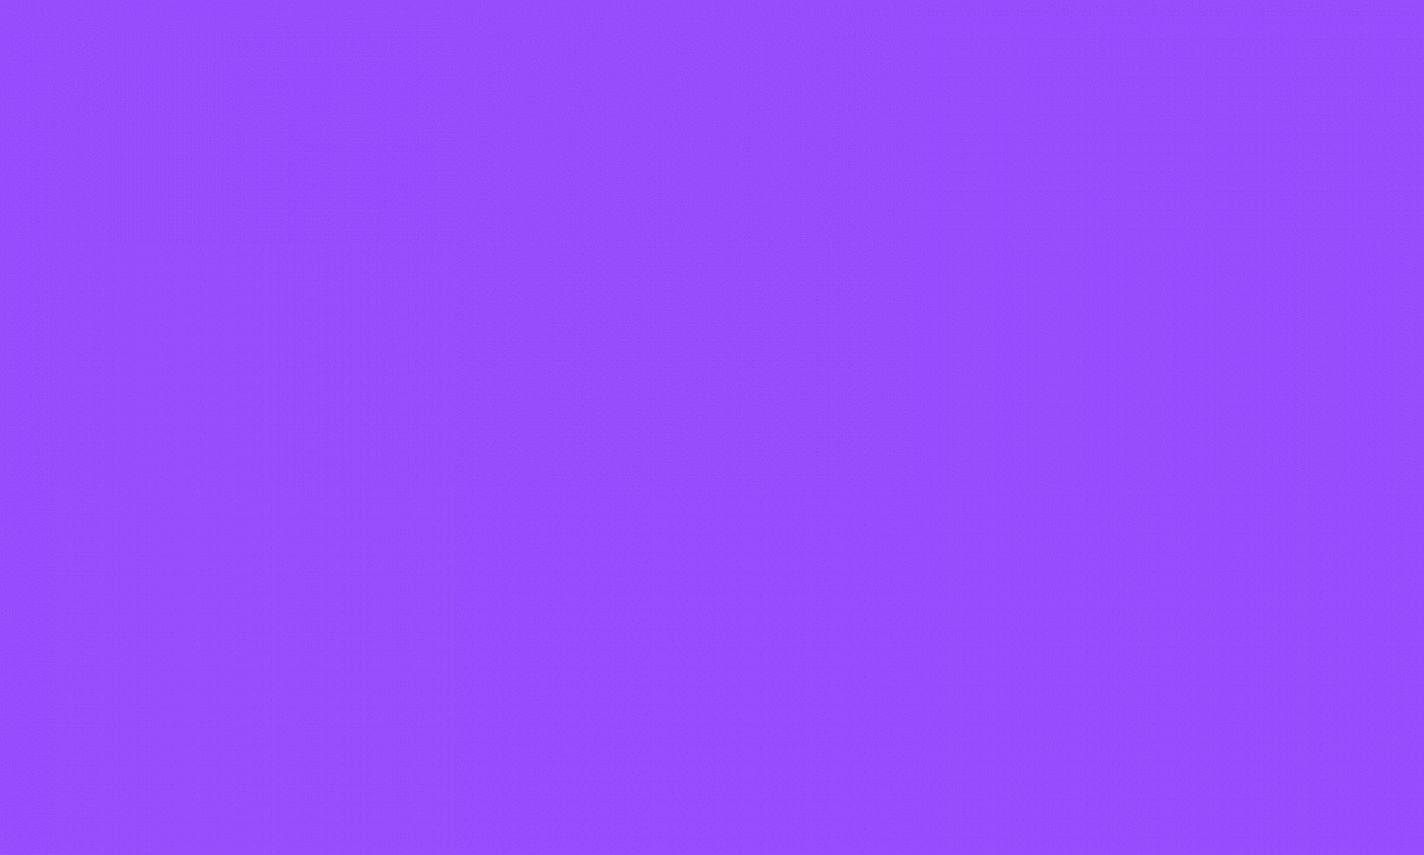 Dark Solid Purple Wallpaper - WallpaperSafari